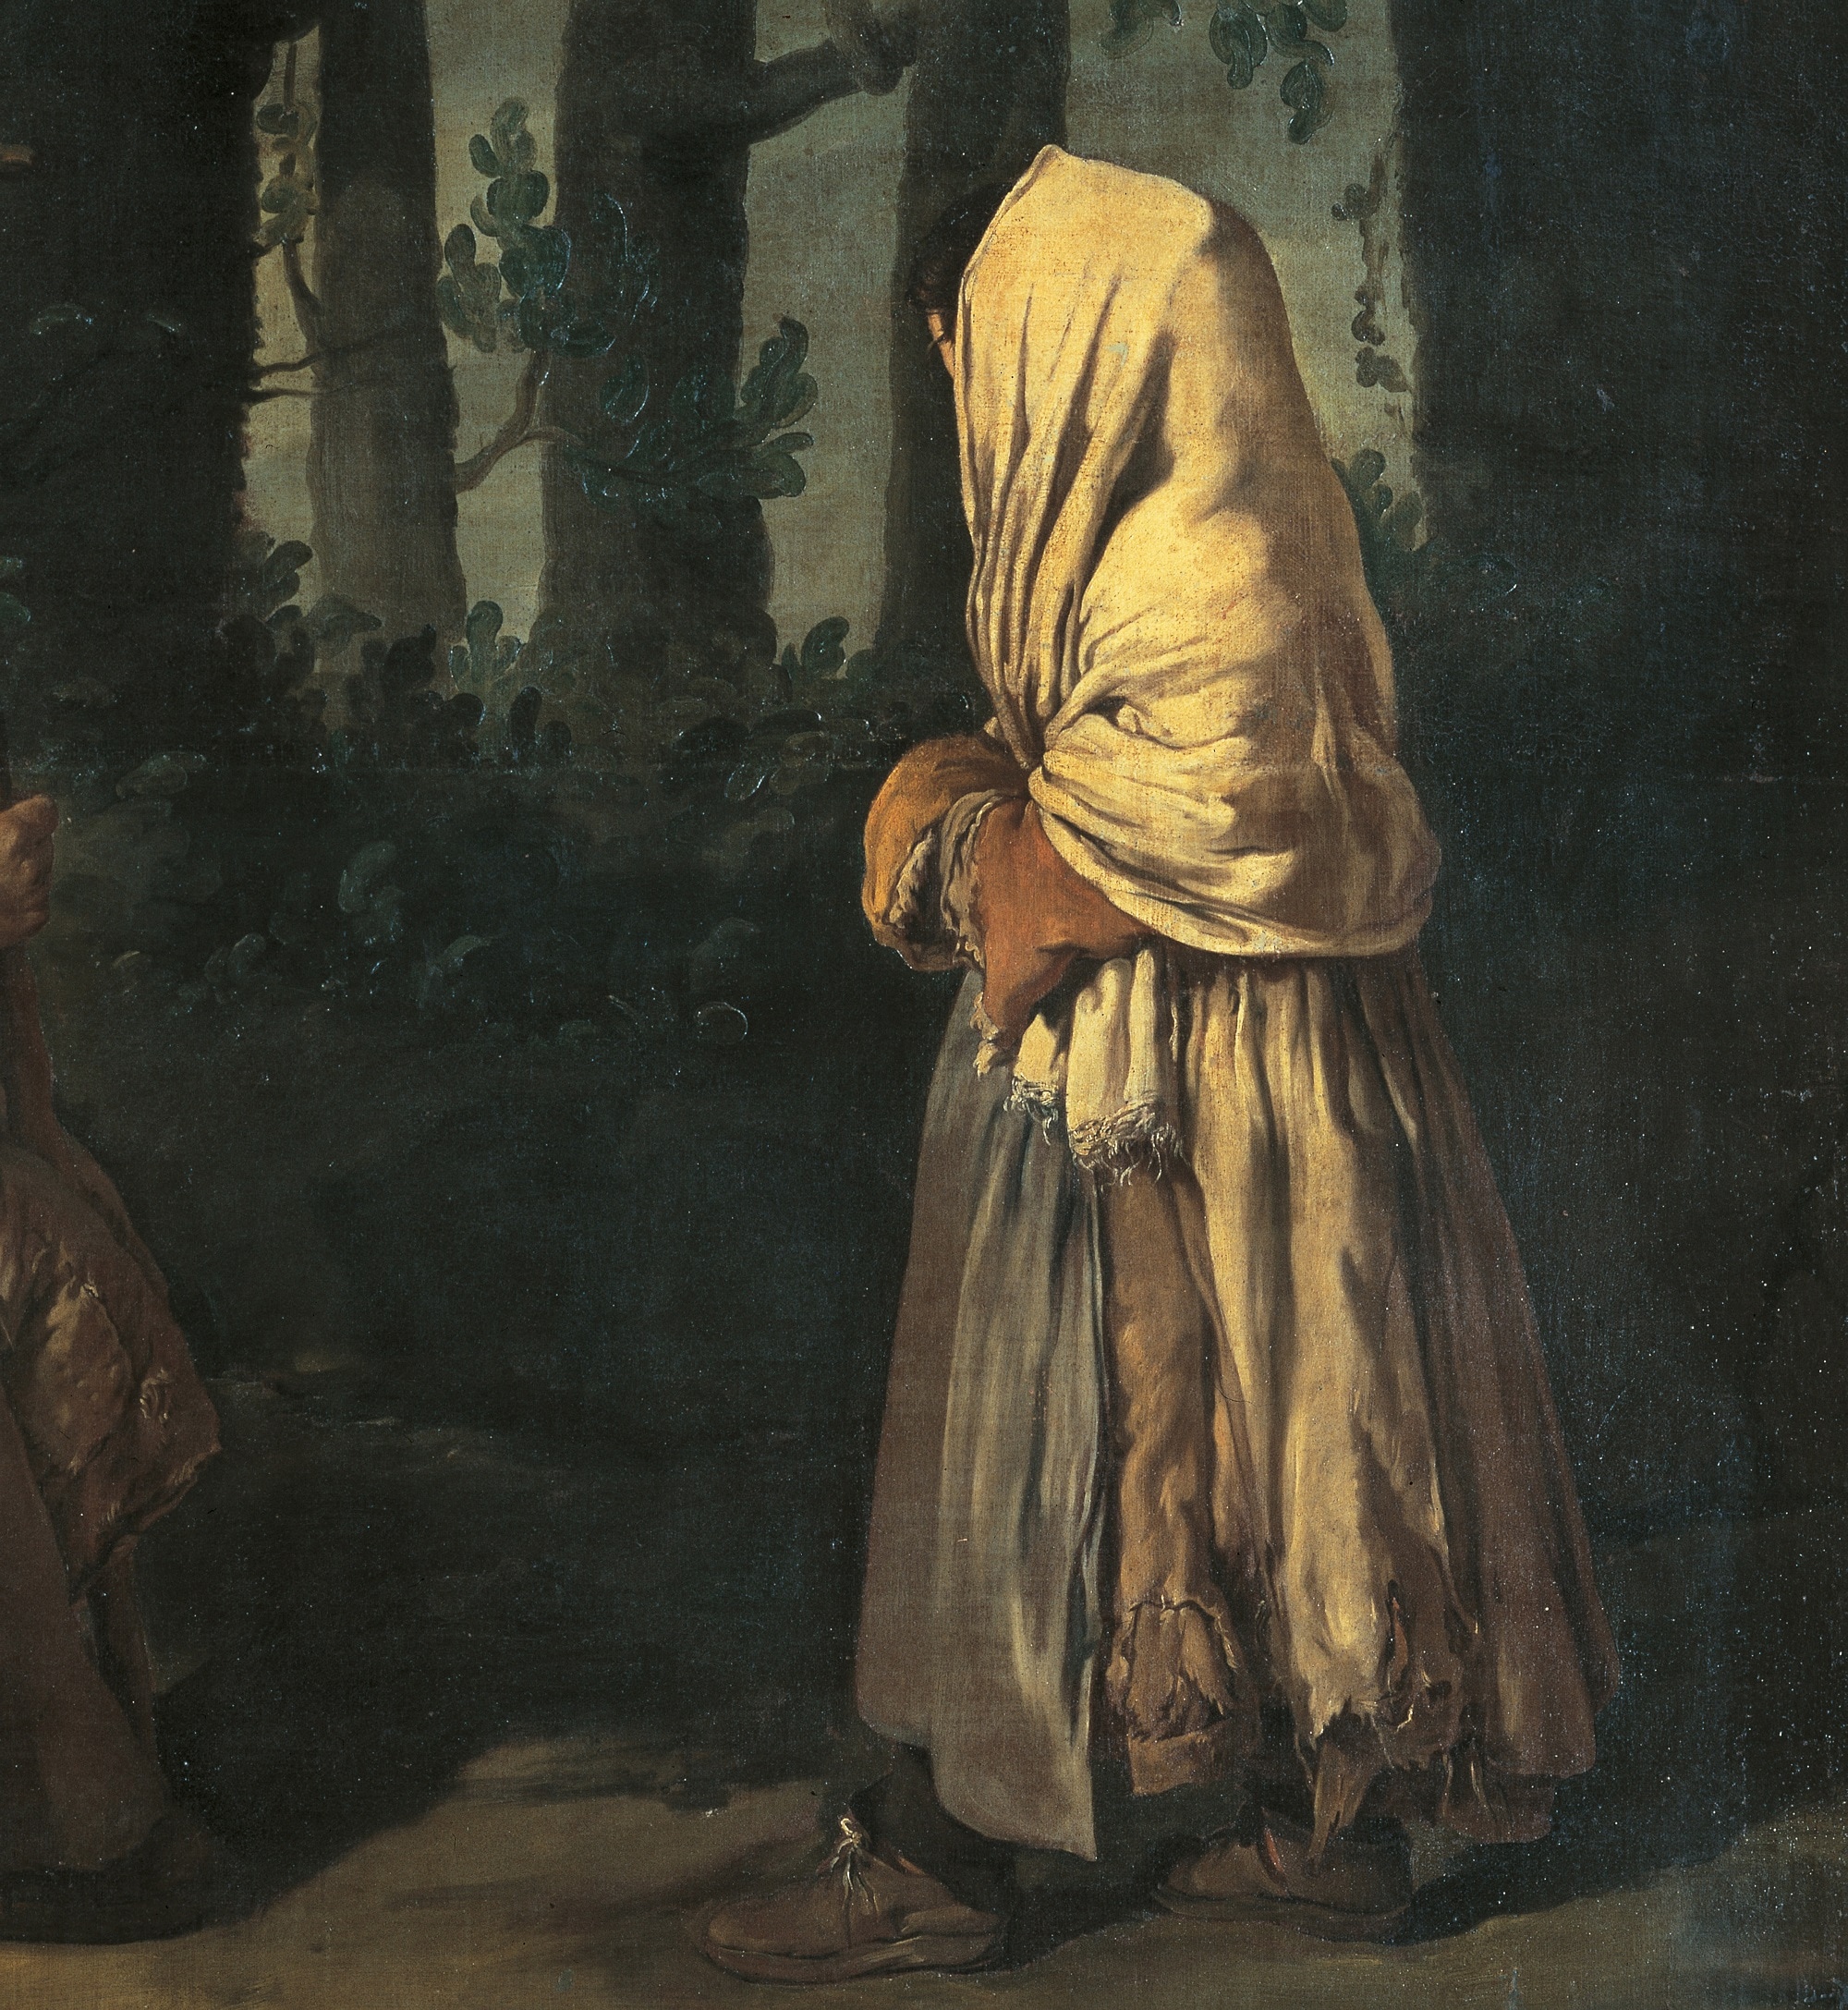 Giacomo Ceruti, dettaglio, Due poveri in un bosco, 1730 ca., olio su tela, 189,3cmx156,5cm. (Ciclo di Padernello), Pinacoteca Tosio Martinengo, Brescia